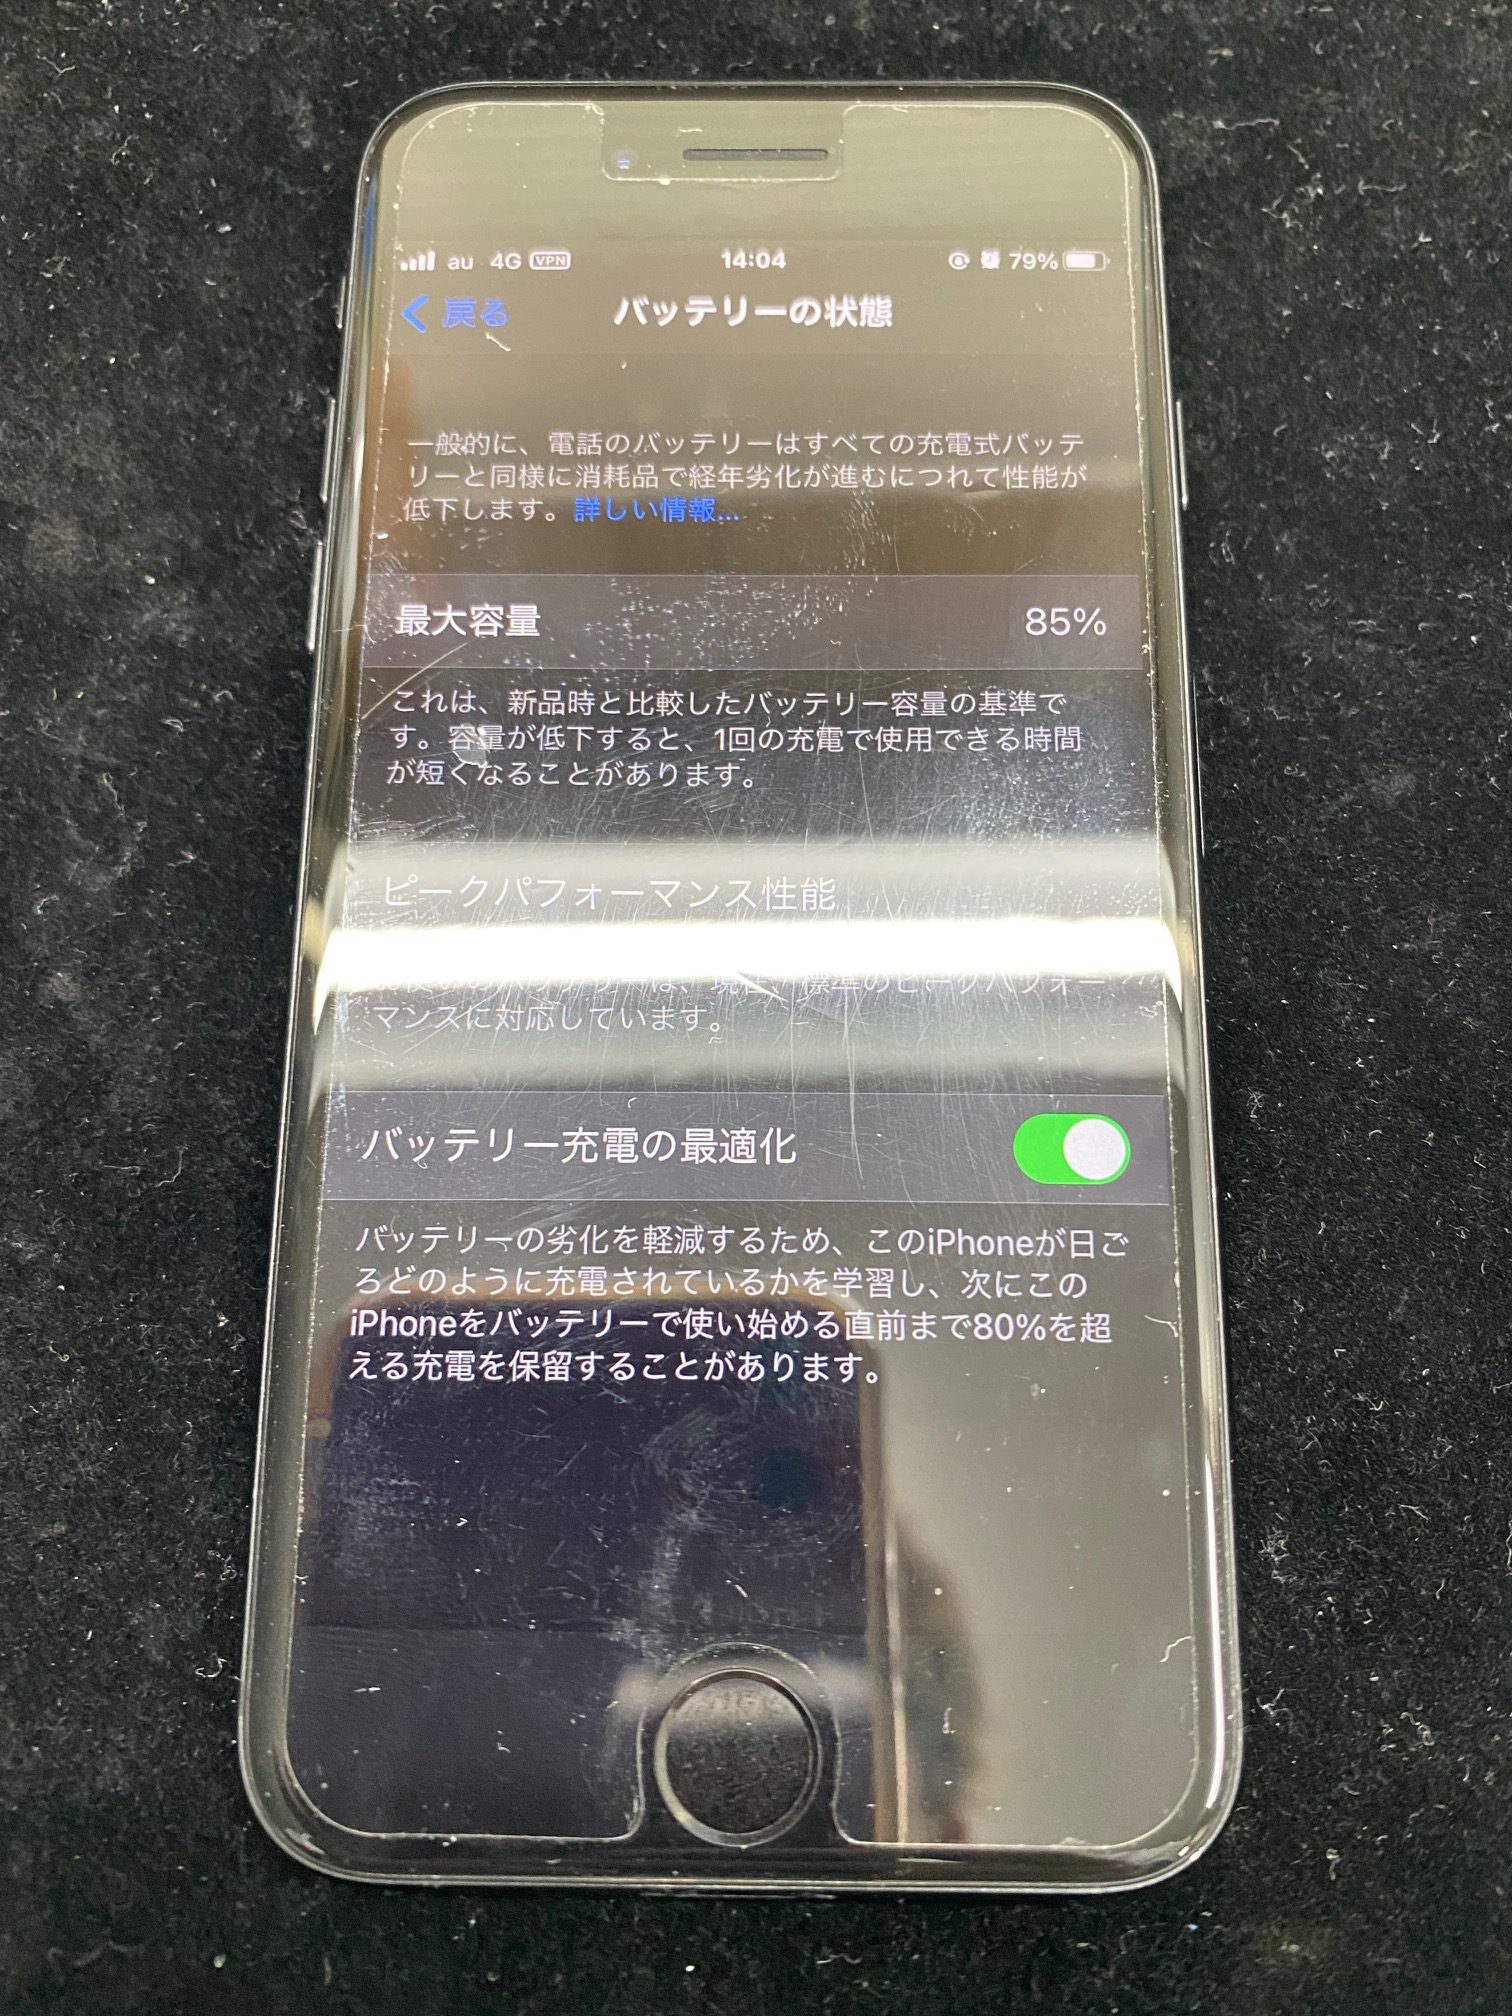 松本市内のお客様よりiPhone7バッテリー交換作業をご依頼頂きました。